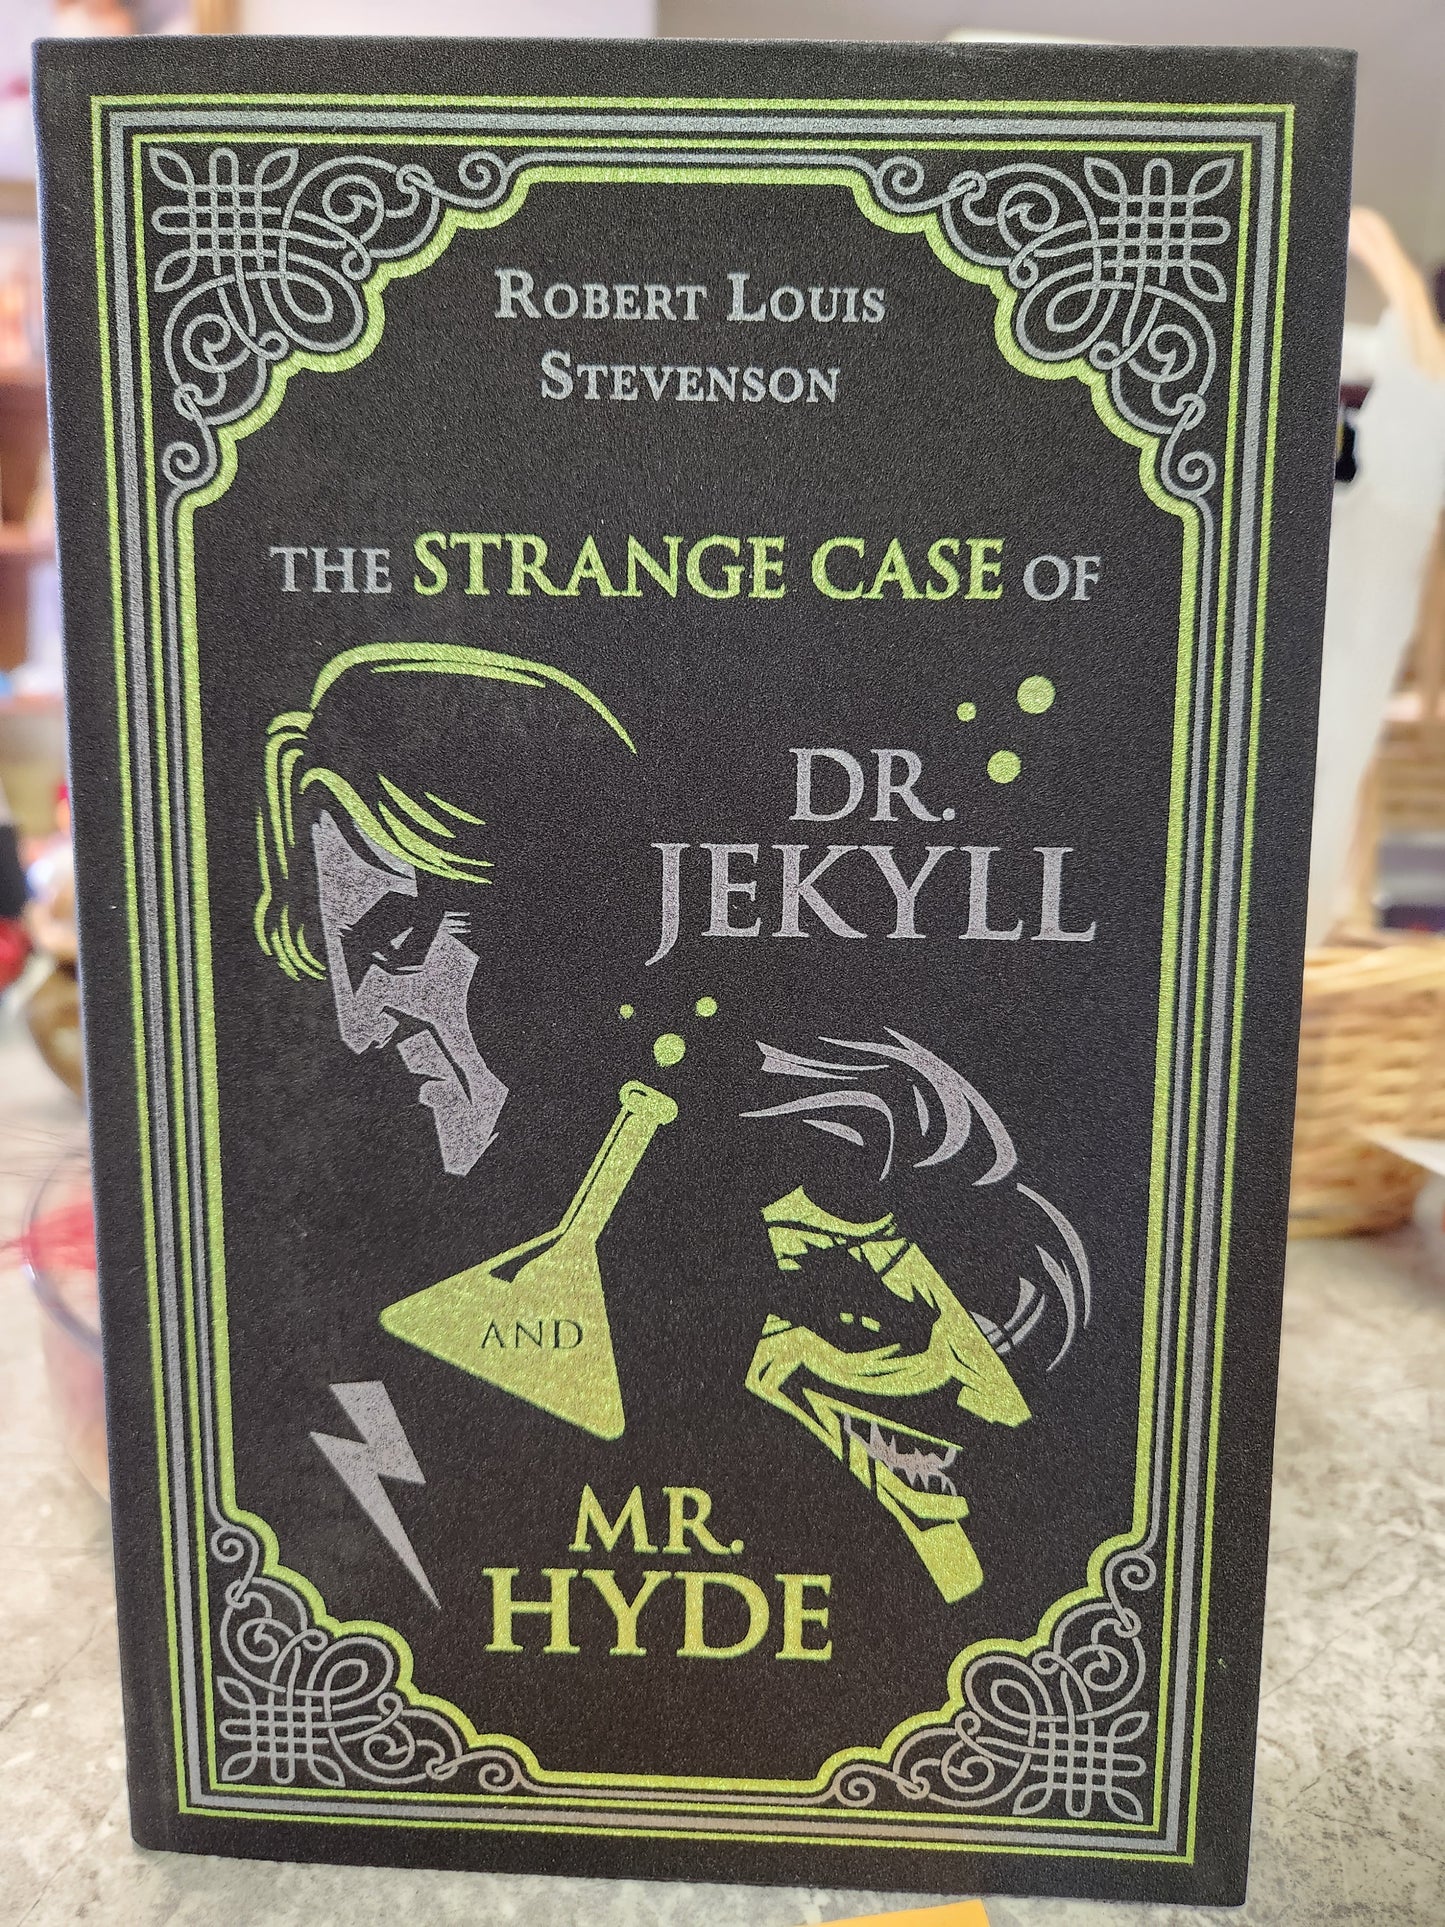 The Strange Case of Dr. Jekyll and Mr. Hyde; Robert Louis Stevenson